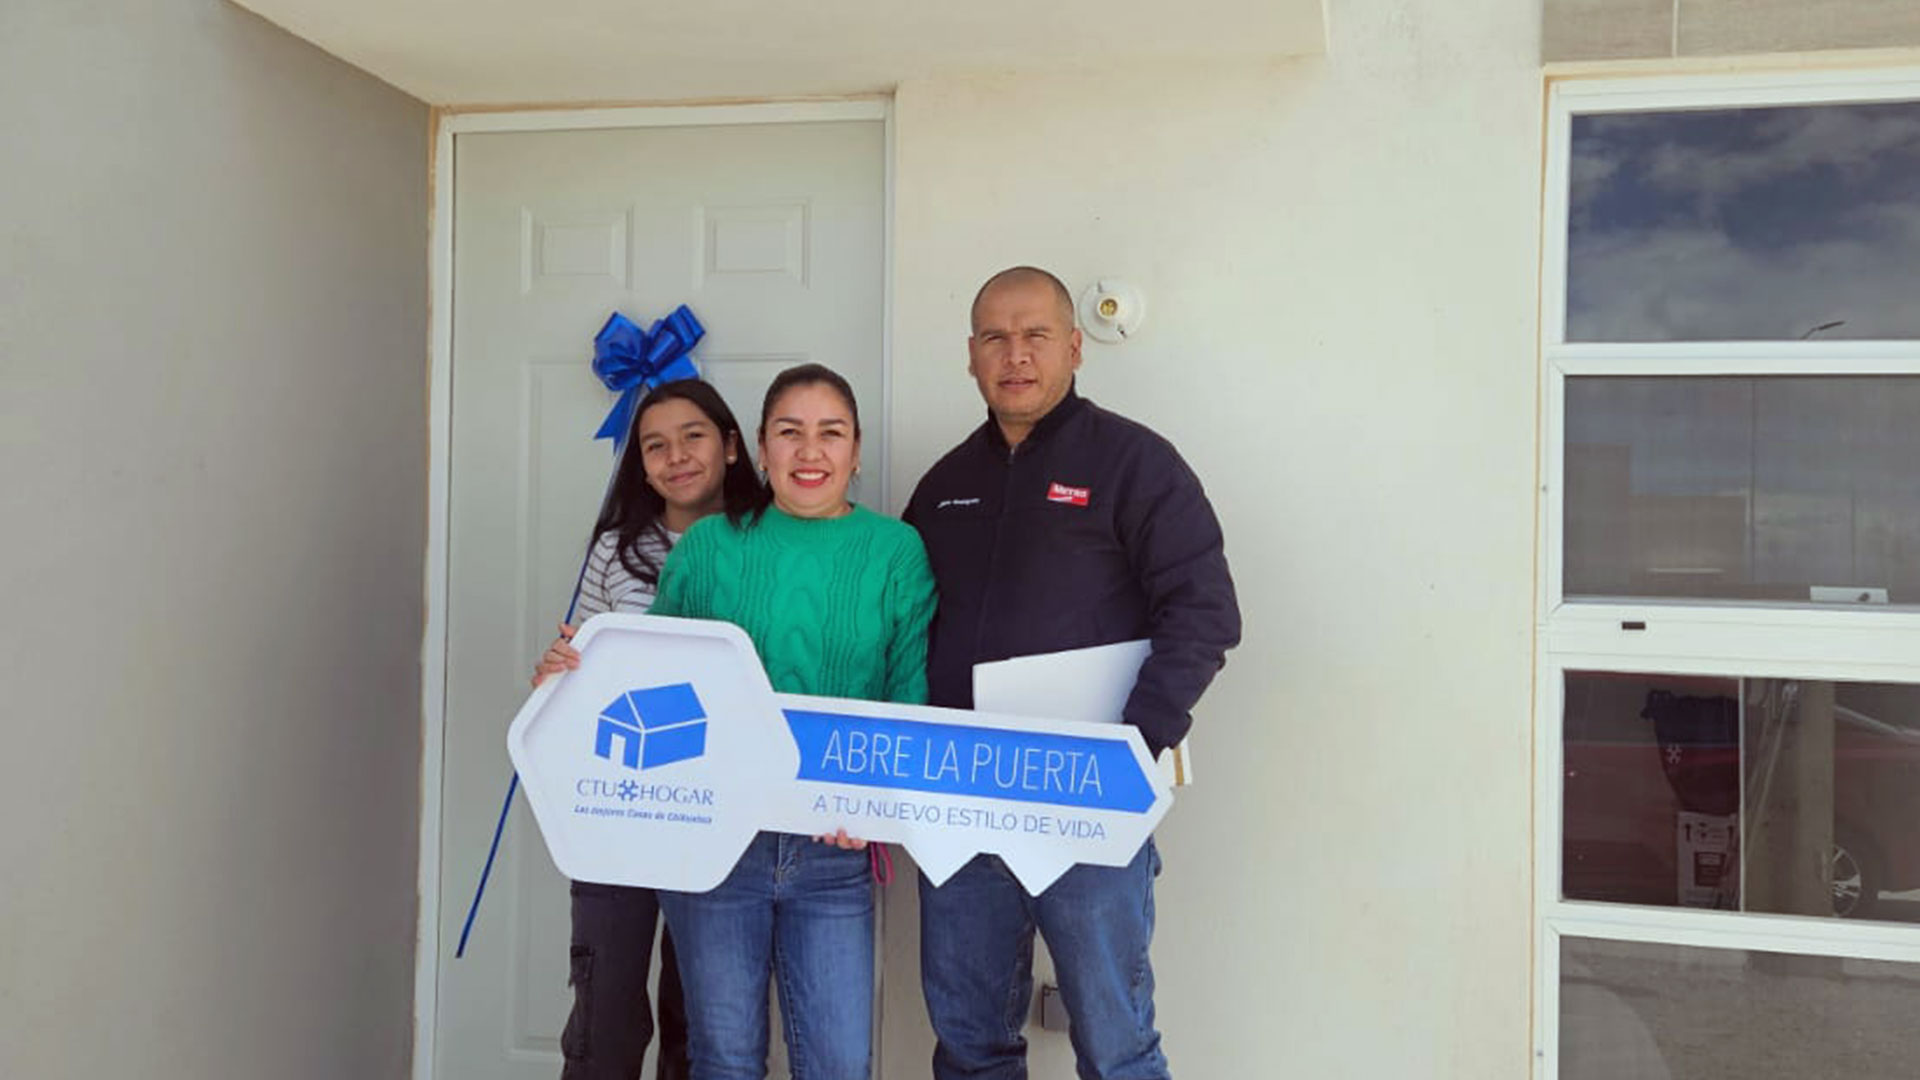 Esta familia compró su casa nueva en un residencial CTU con las mejores condiciones de crédito hipotecario gracias a nuestro equipo de expertos asesores inmobiliarios.